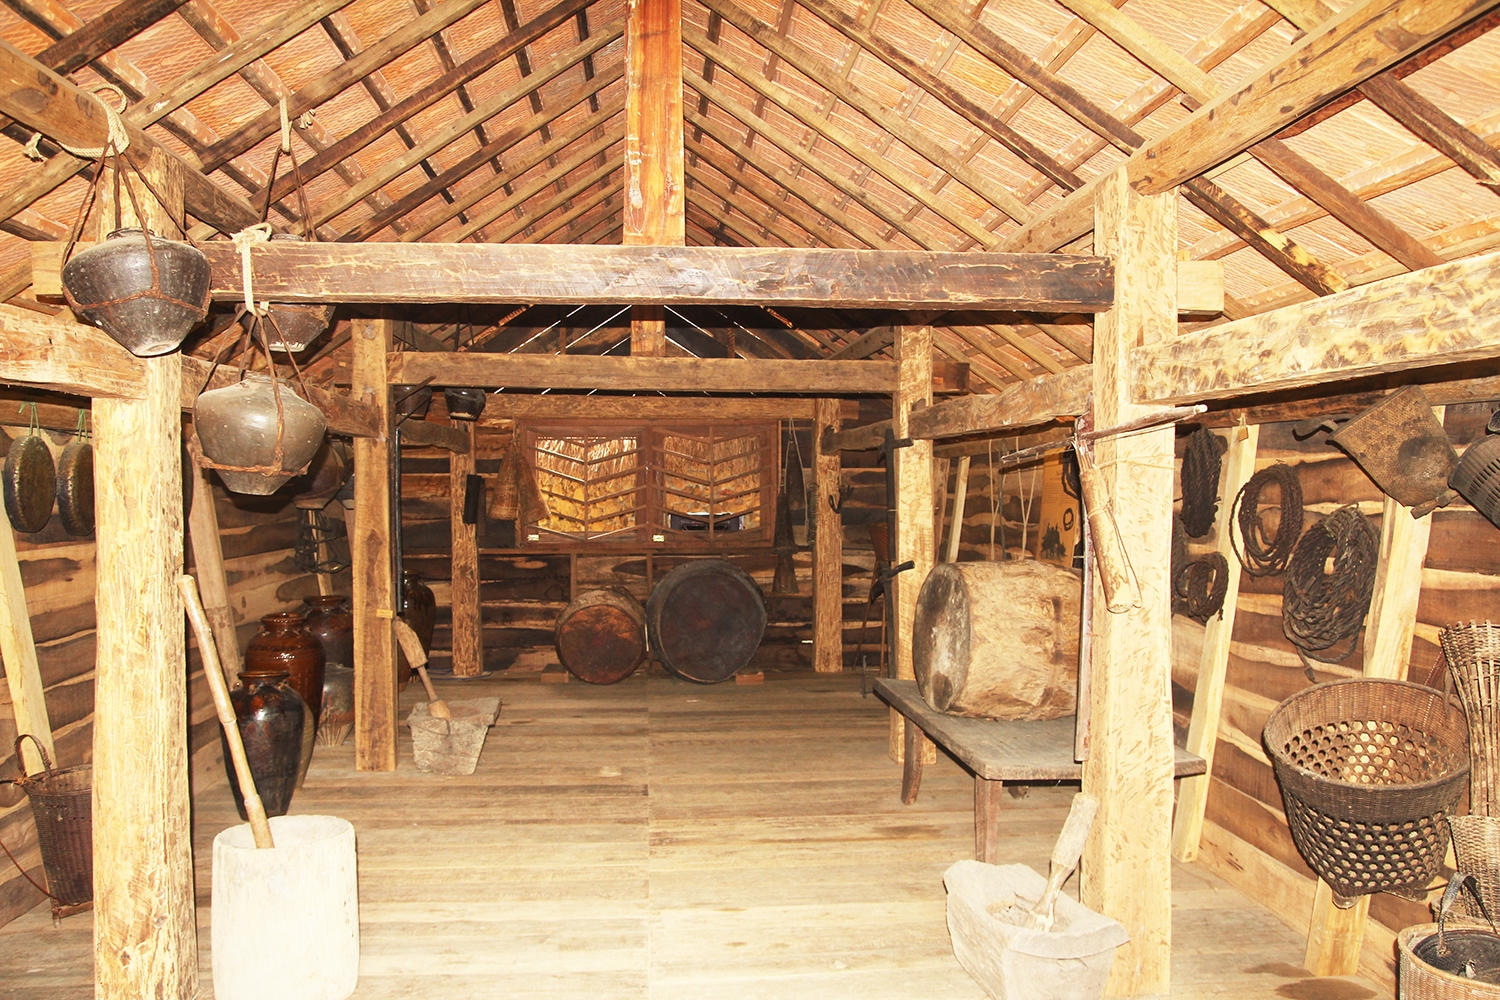 Việc xây dựng Khu bảo tồn văn hóa nhằm giữ gìn các sản phẩm văn hóa đặc trưng của đồng bào dân tộc địa phương. (Ảnh minh họa)